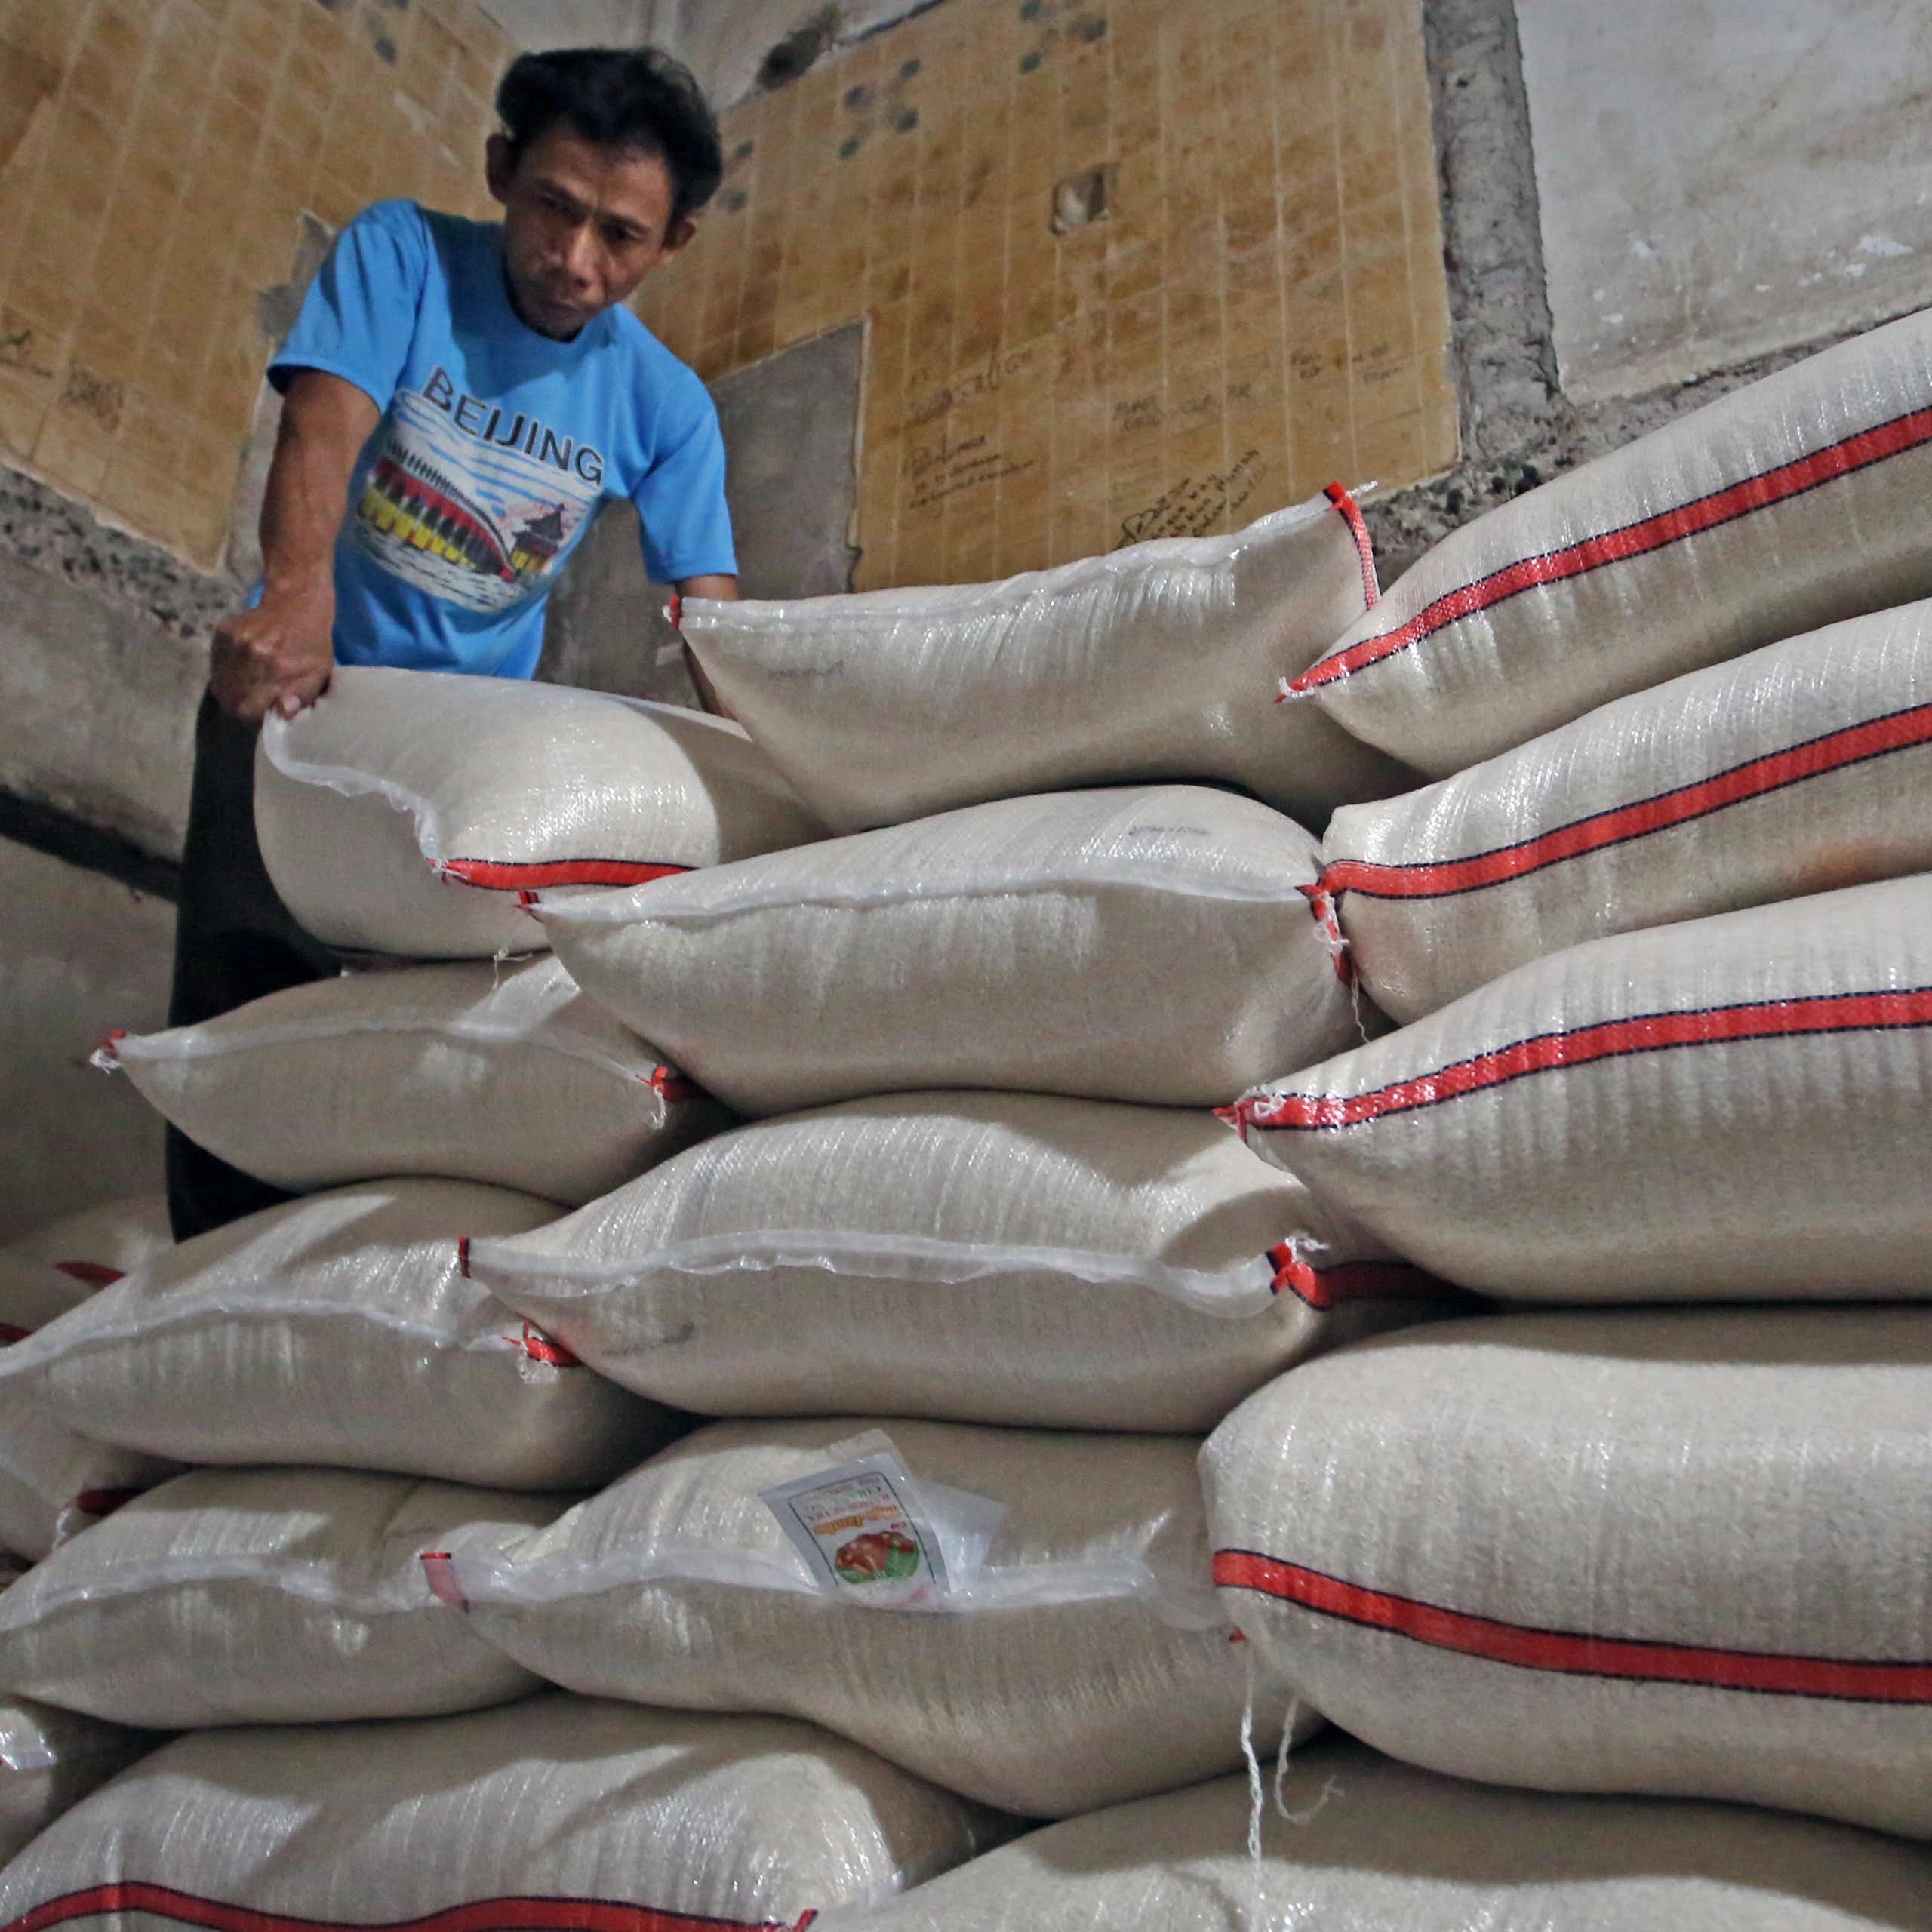 Cek Fakta: Jokowi klaim impor beras tidak sampai 5% dari total kebutuhan nasional. Benarkah?